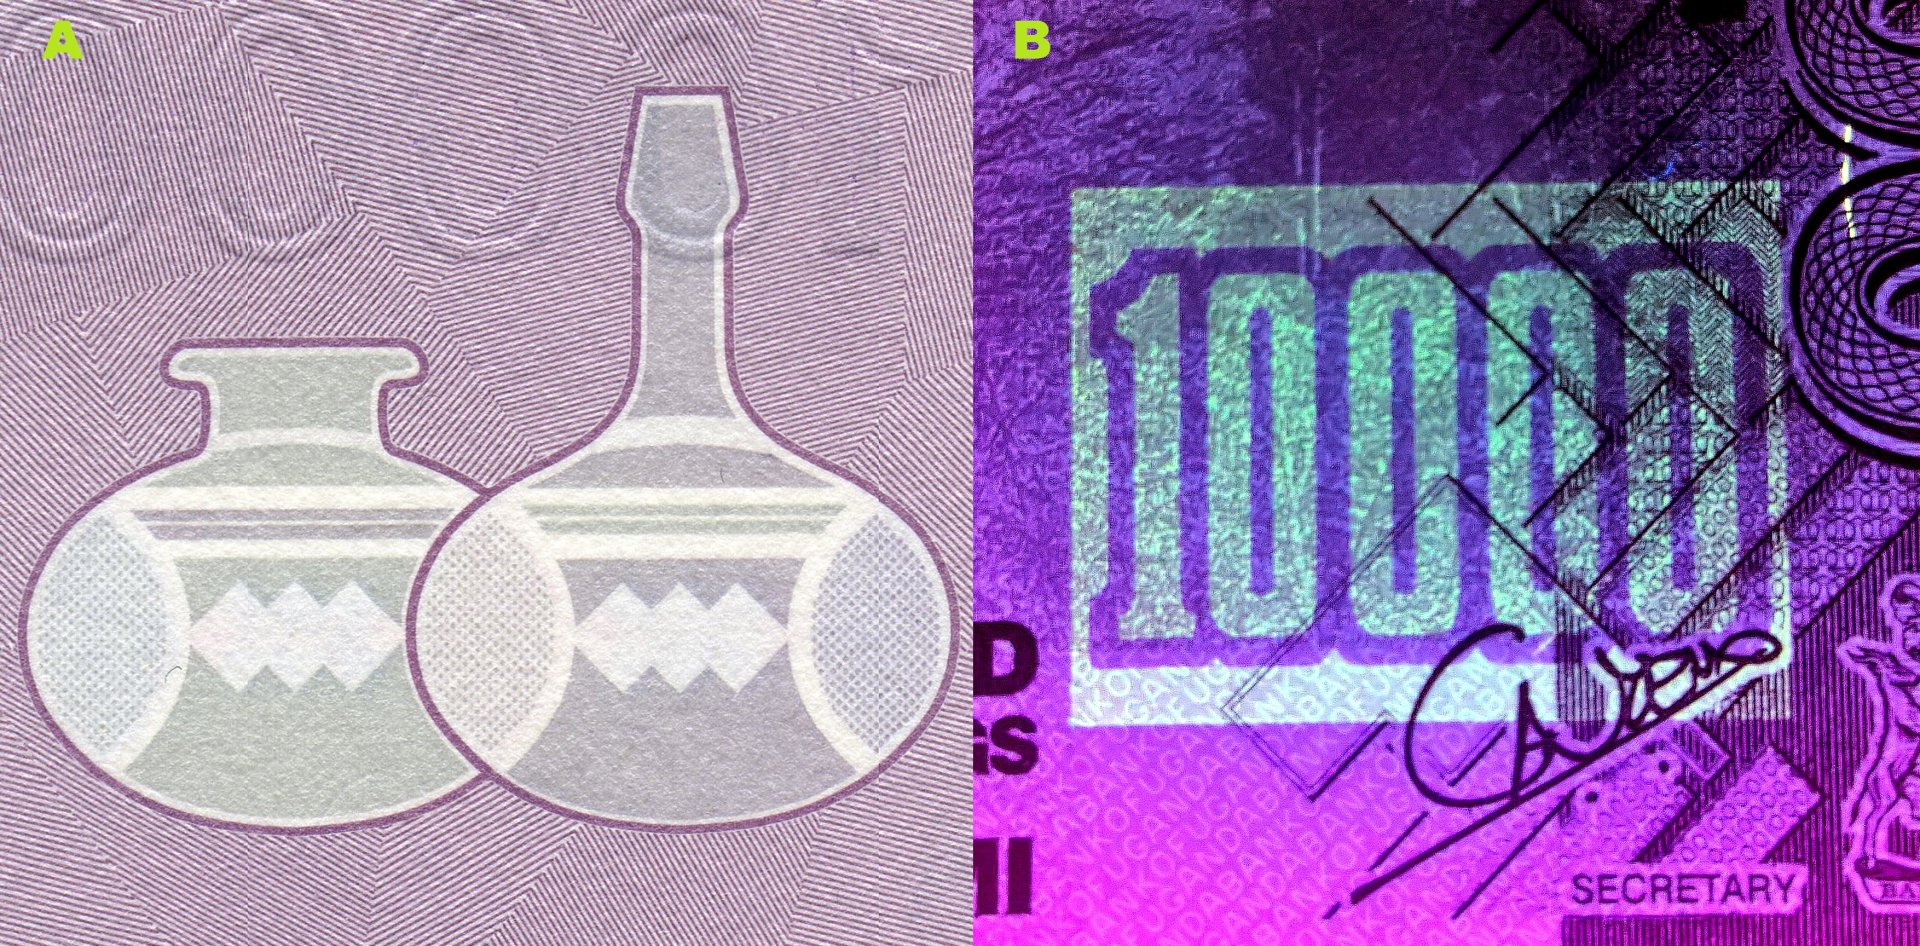 Obrázek 5. A) Soutisková značka ve tvaru dvou nádob z kalabasy. B) UV nominální pole na averzu bankovky.